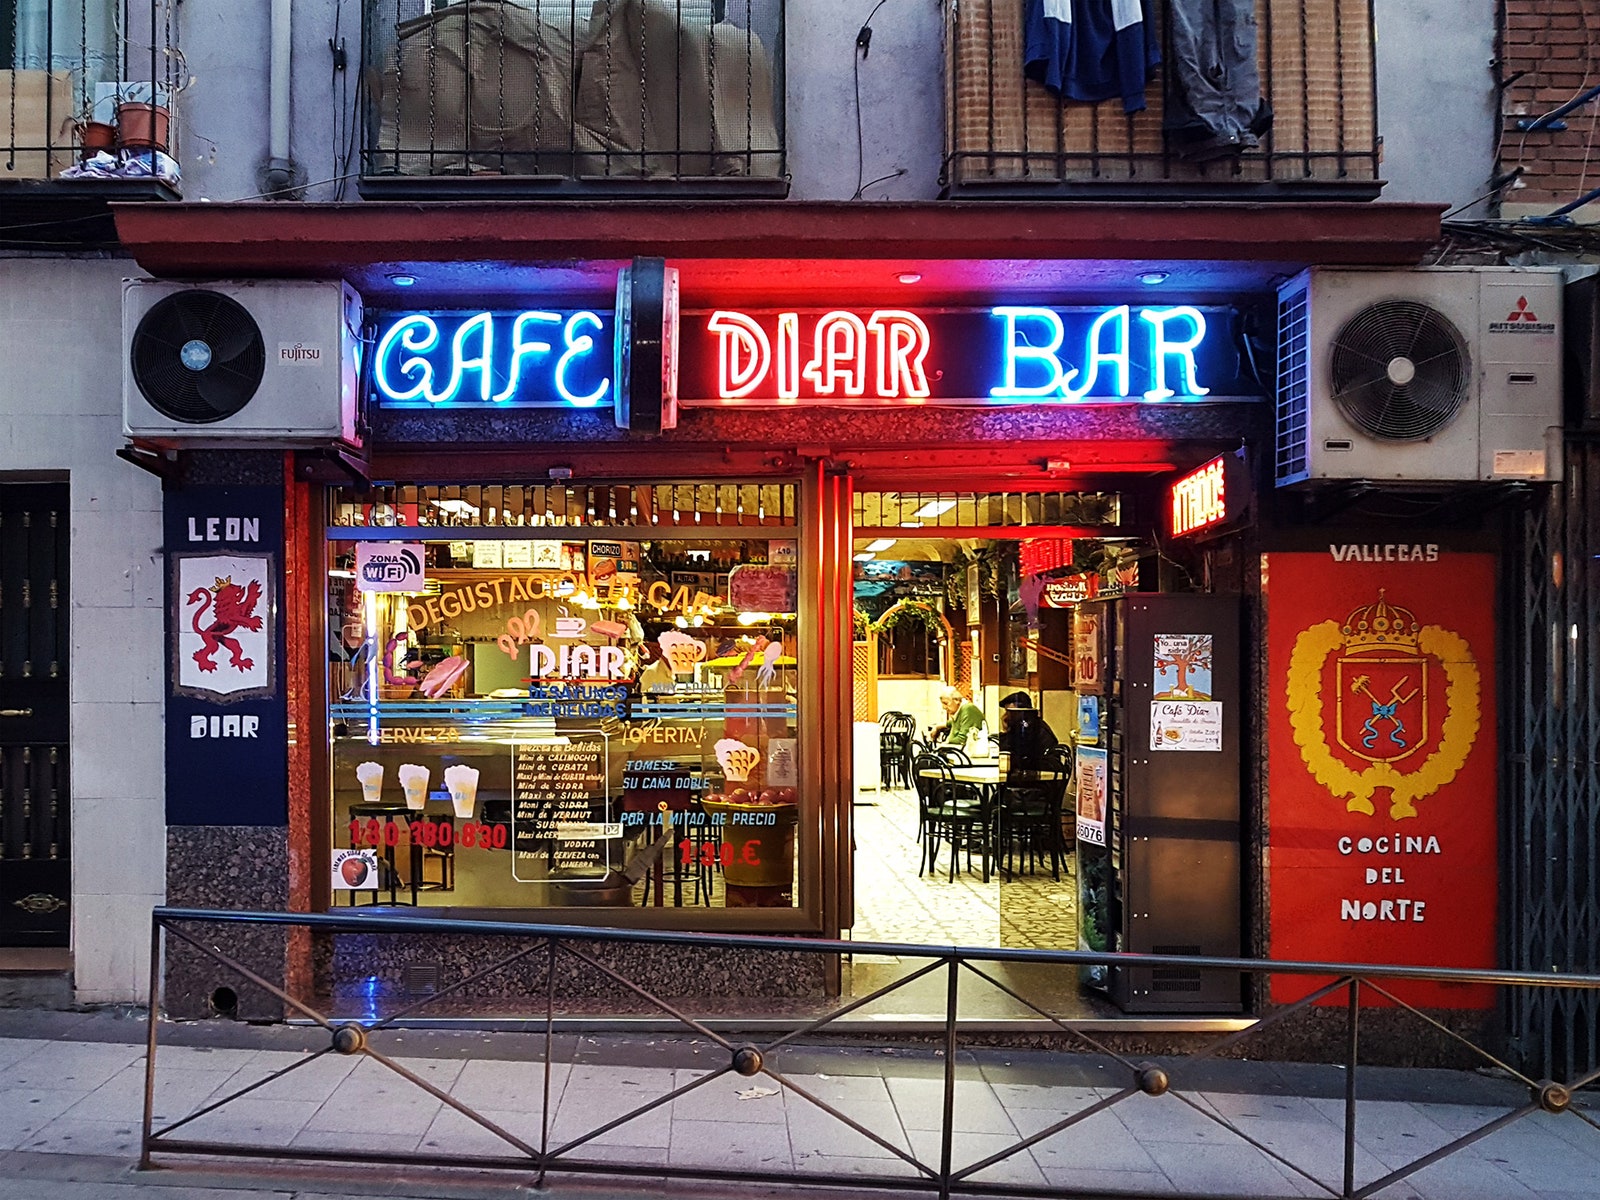 Традиционные бары и кафе в Мадриде